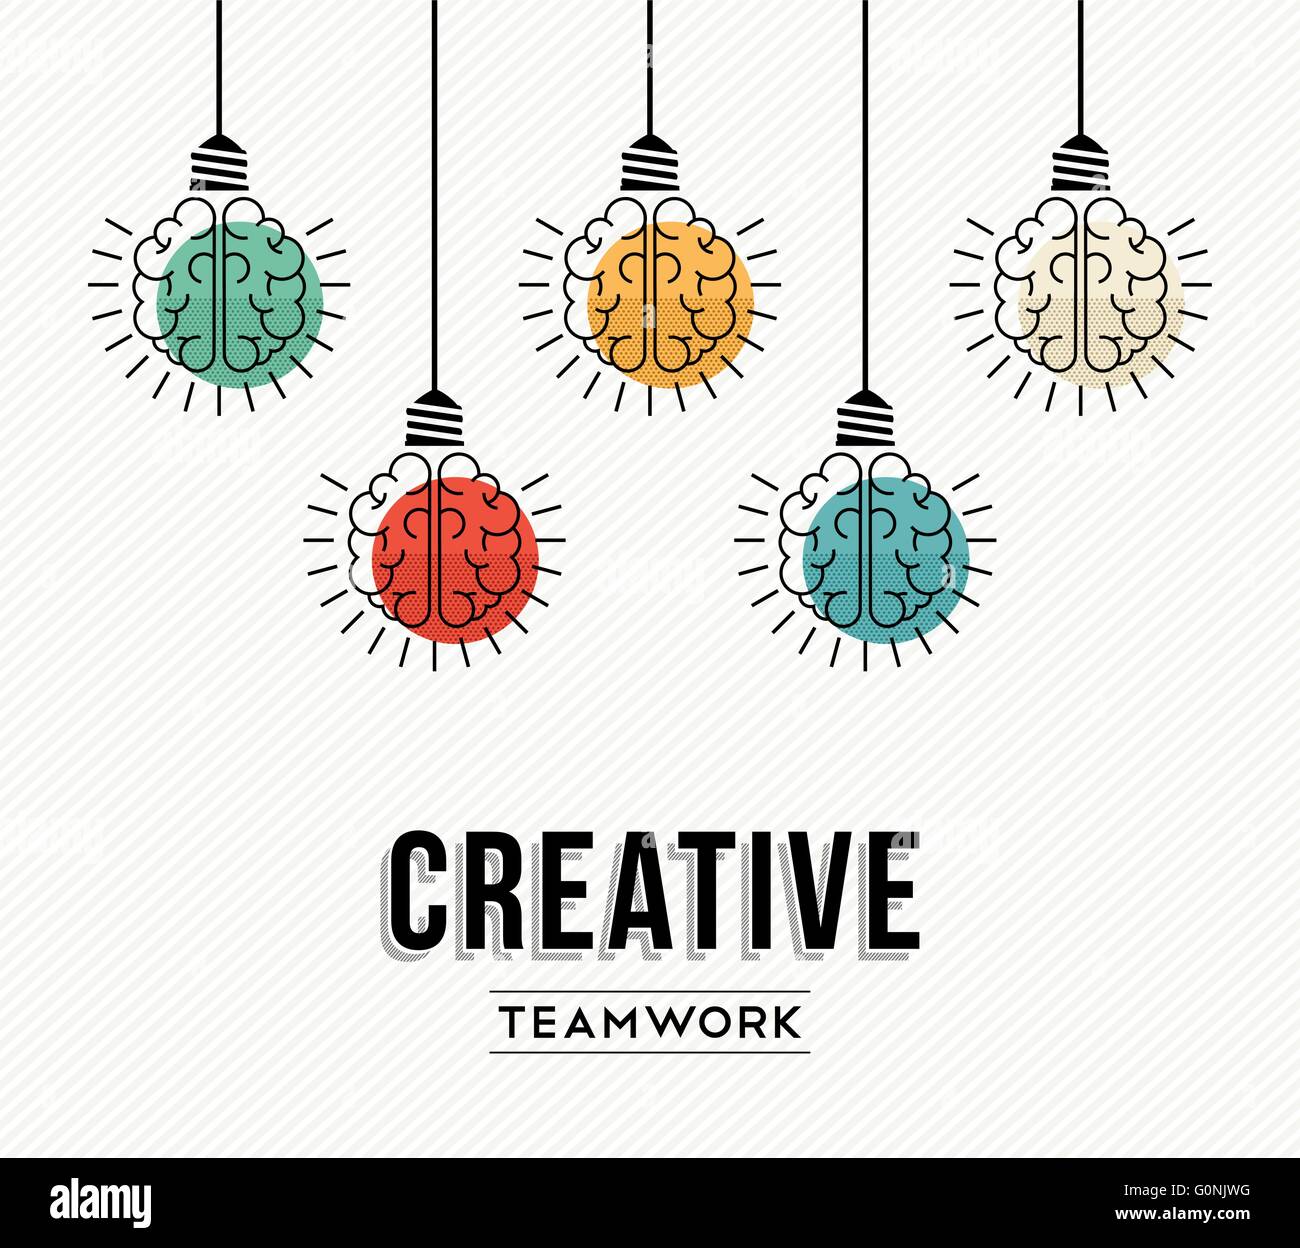 Le travail d'équipe créatif design moderne avec le cerveau humain comme lampe lumière colorée, le succès dans les affaires. Vecteur EPS10. Illustration de Vecteur